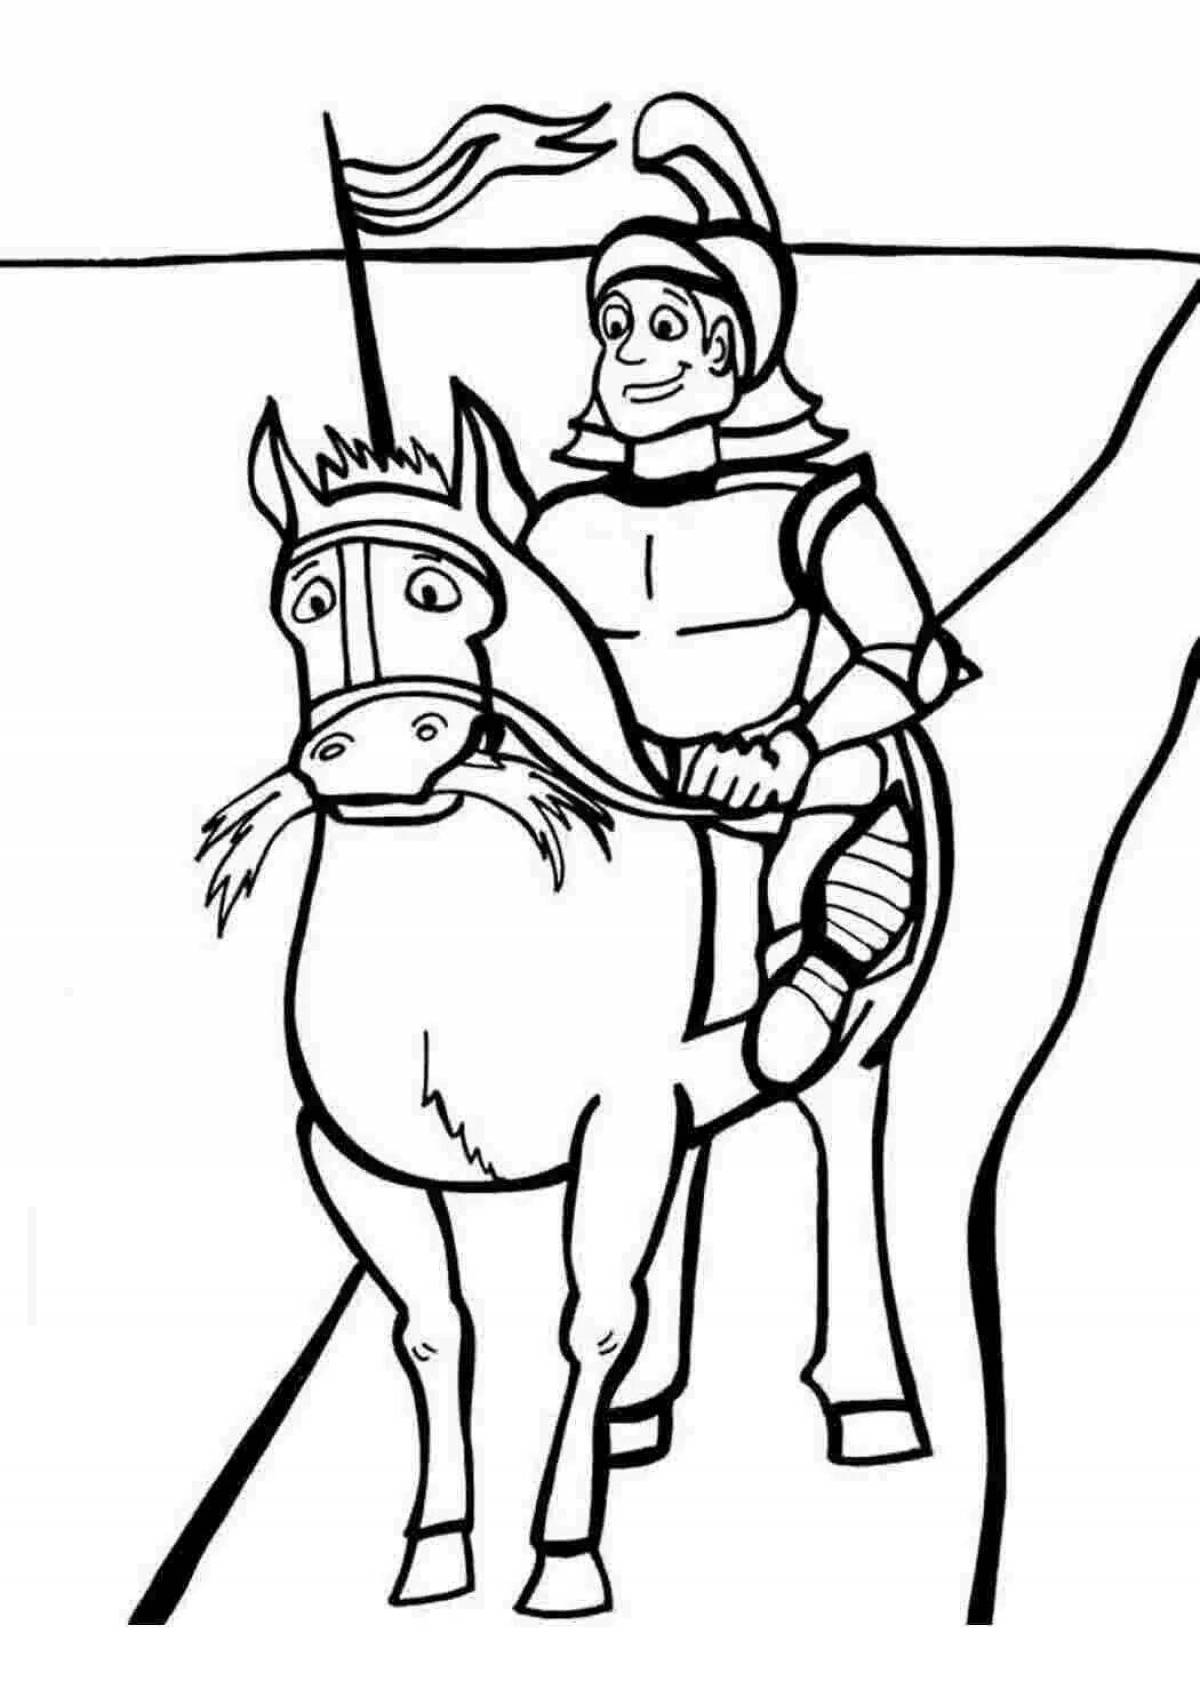 Благородный герой раскраски верхом на лошади